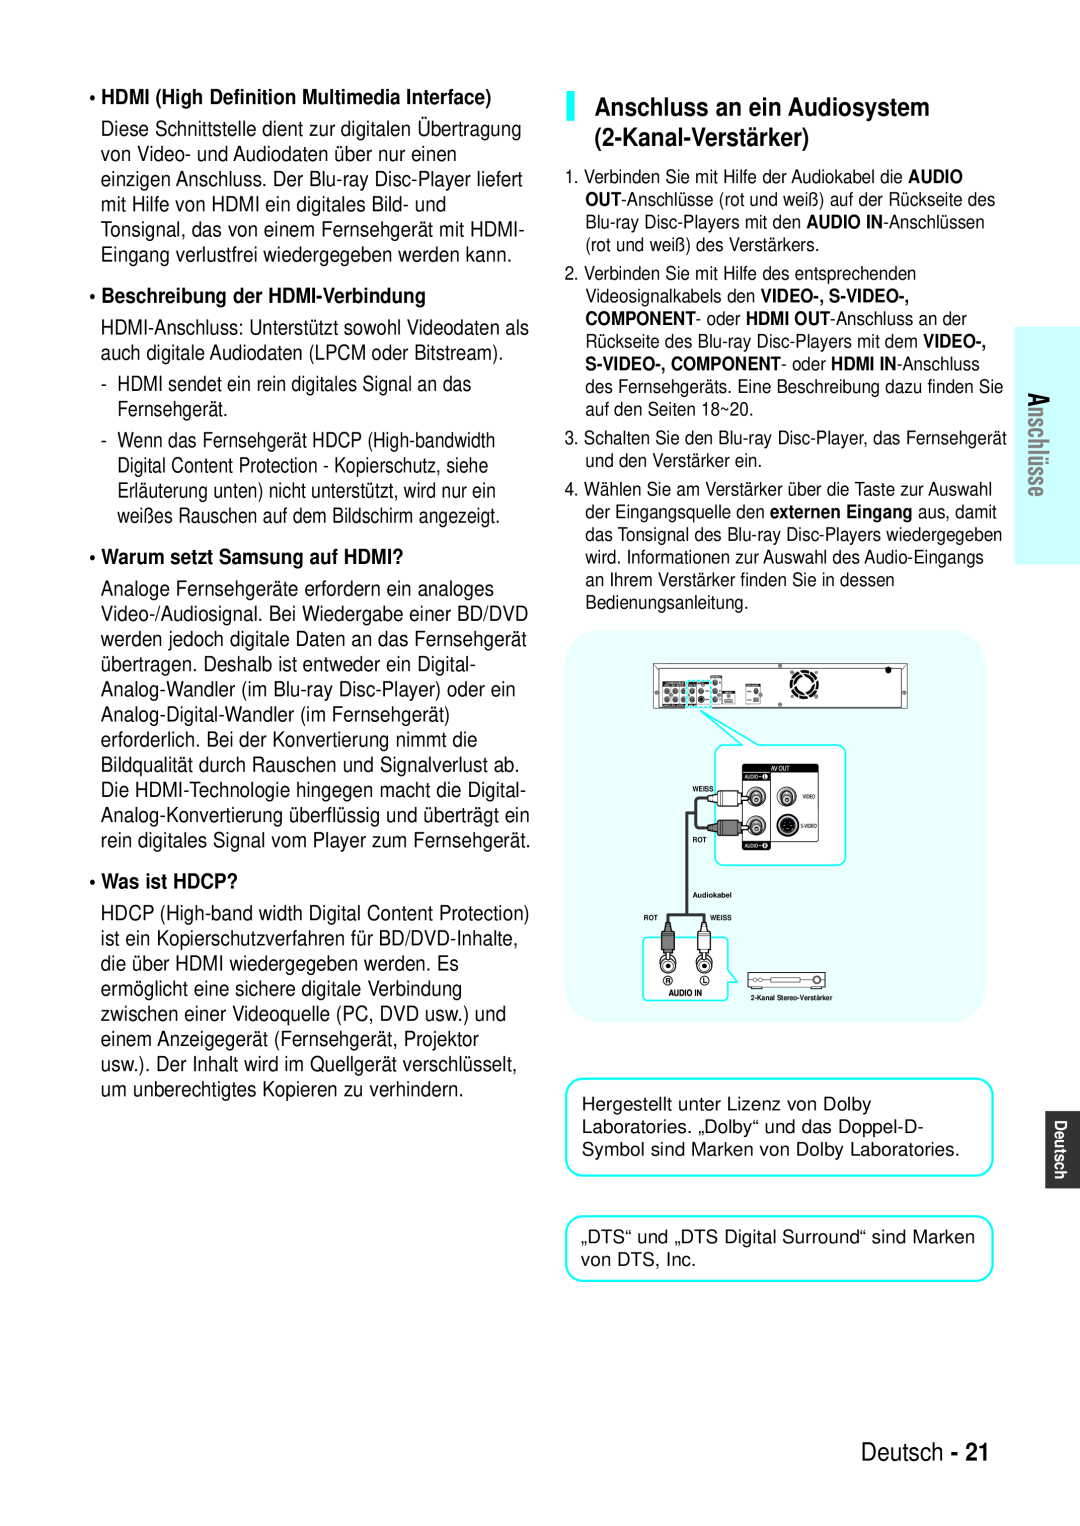 Samsung BD-P1000/XEN Anschluss an ein Audiosystem 2-Kanal-Verstärker, Beschreibung der HDMI-Verbindung, Was ist HDCP? 